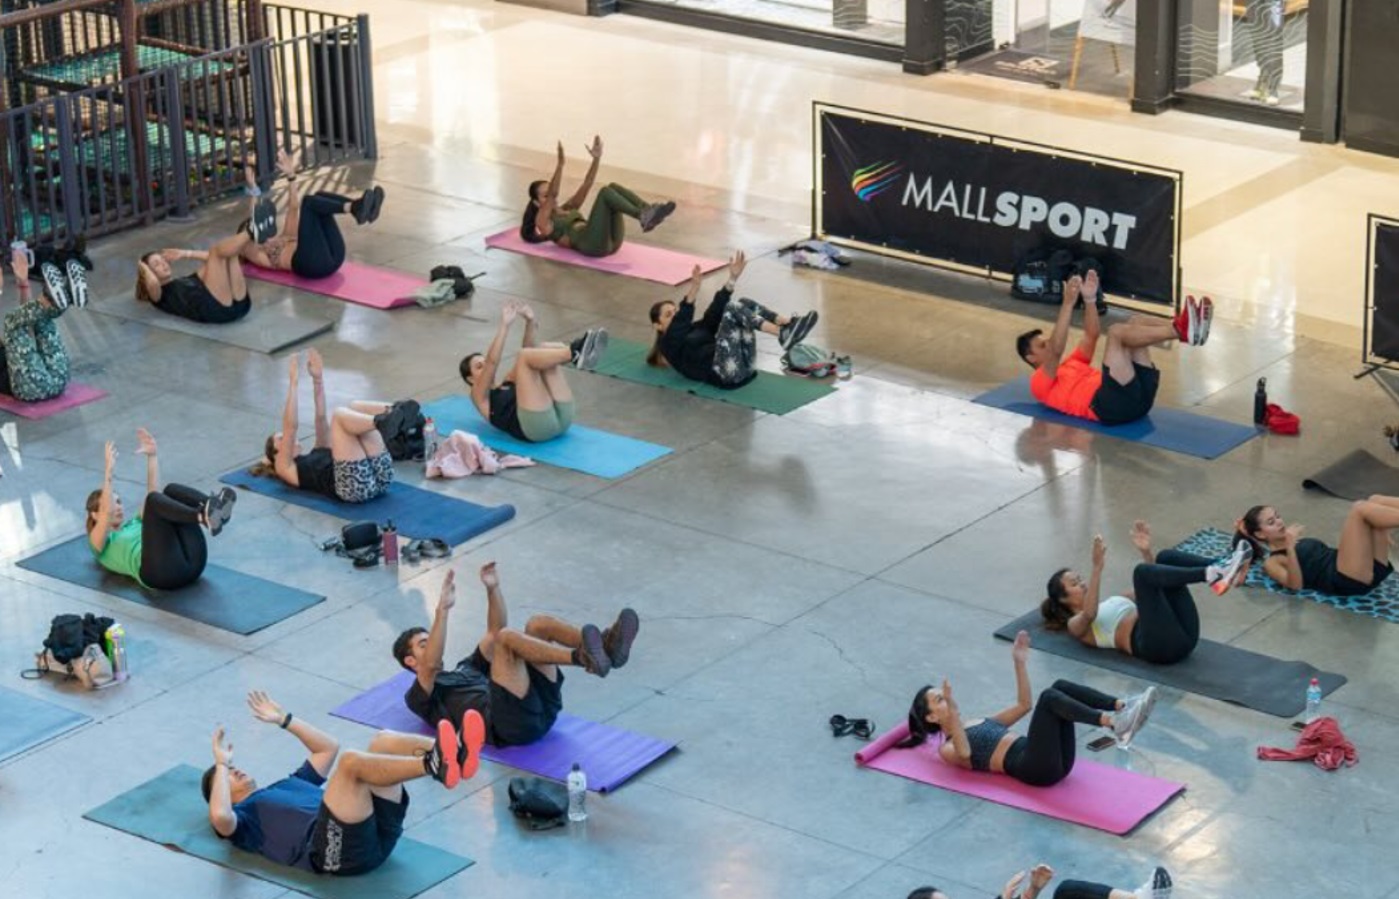 Entretenido entrenamiento de Fitness más Yoga gratuito se realizó el fin de semana en Mall Sport